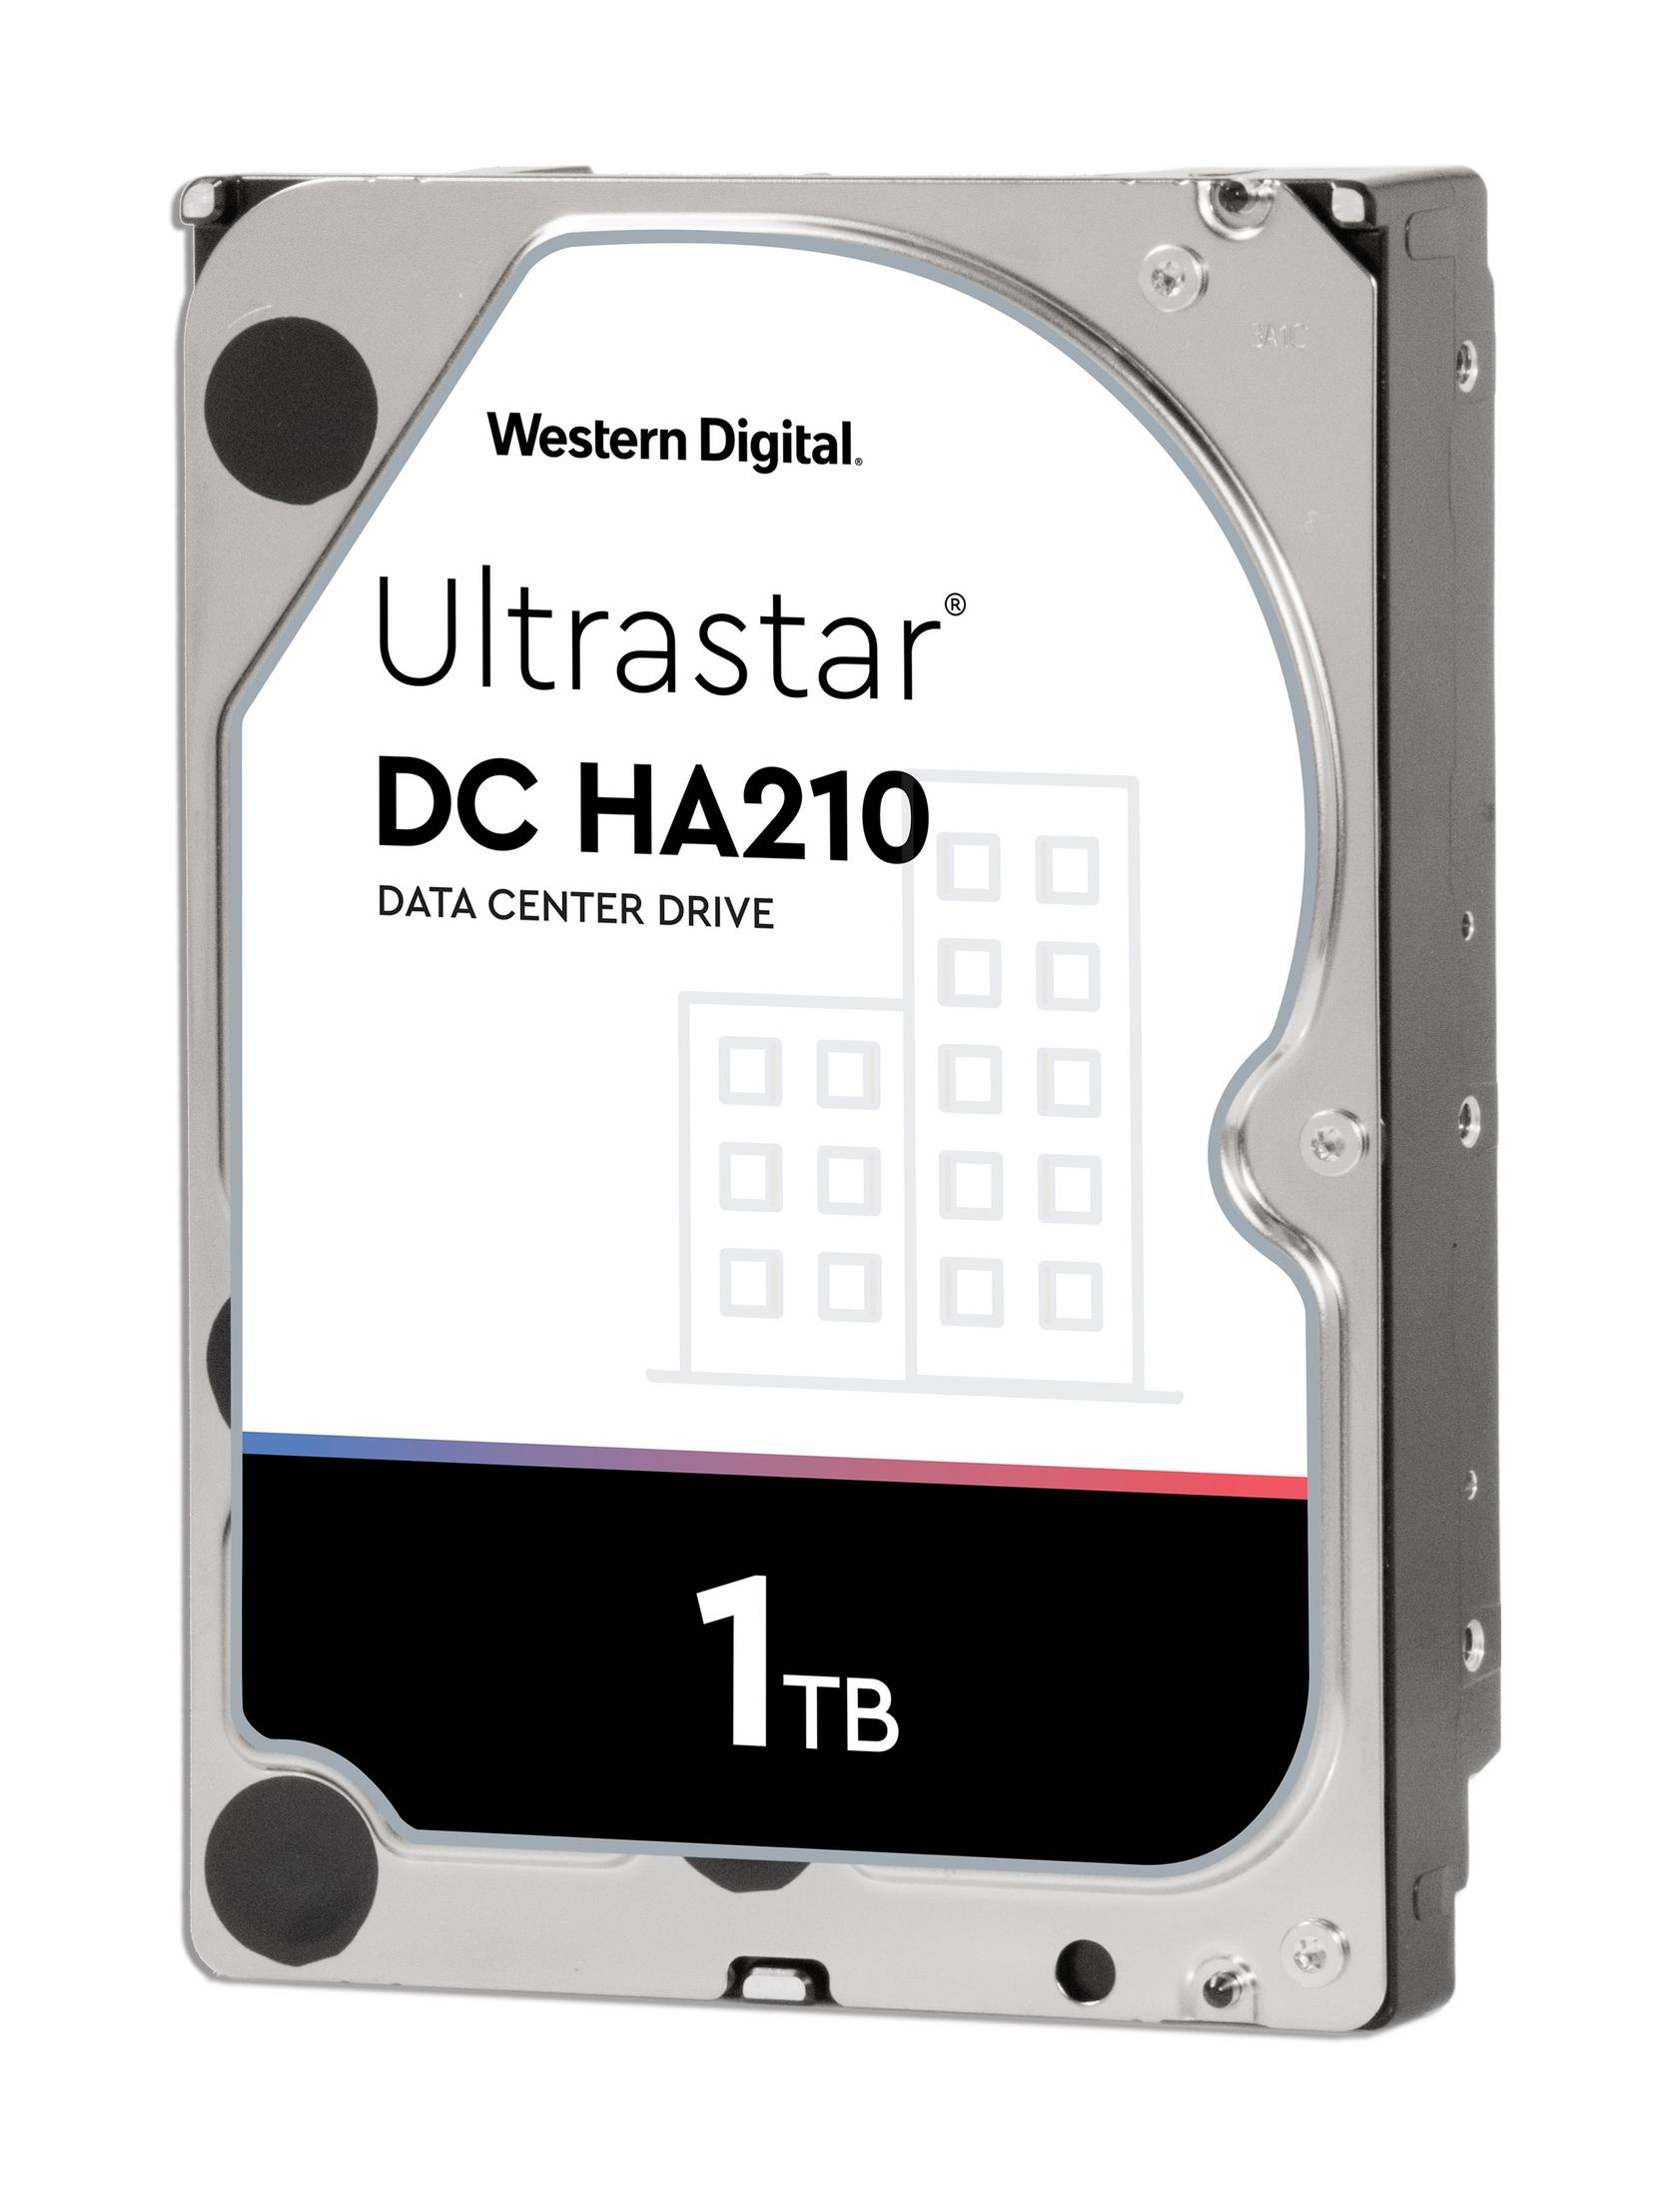 WD 1W10001 ULTRASTAR DC intern 1TB, HA210 Speicher, Zoll, TB, 1 Interner 3,5